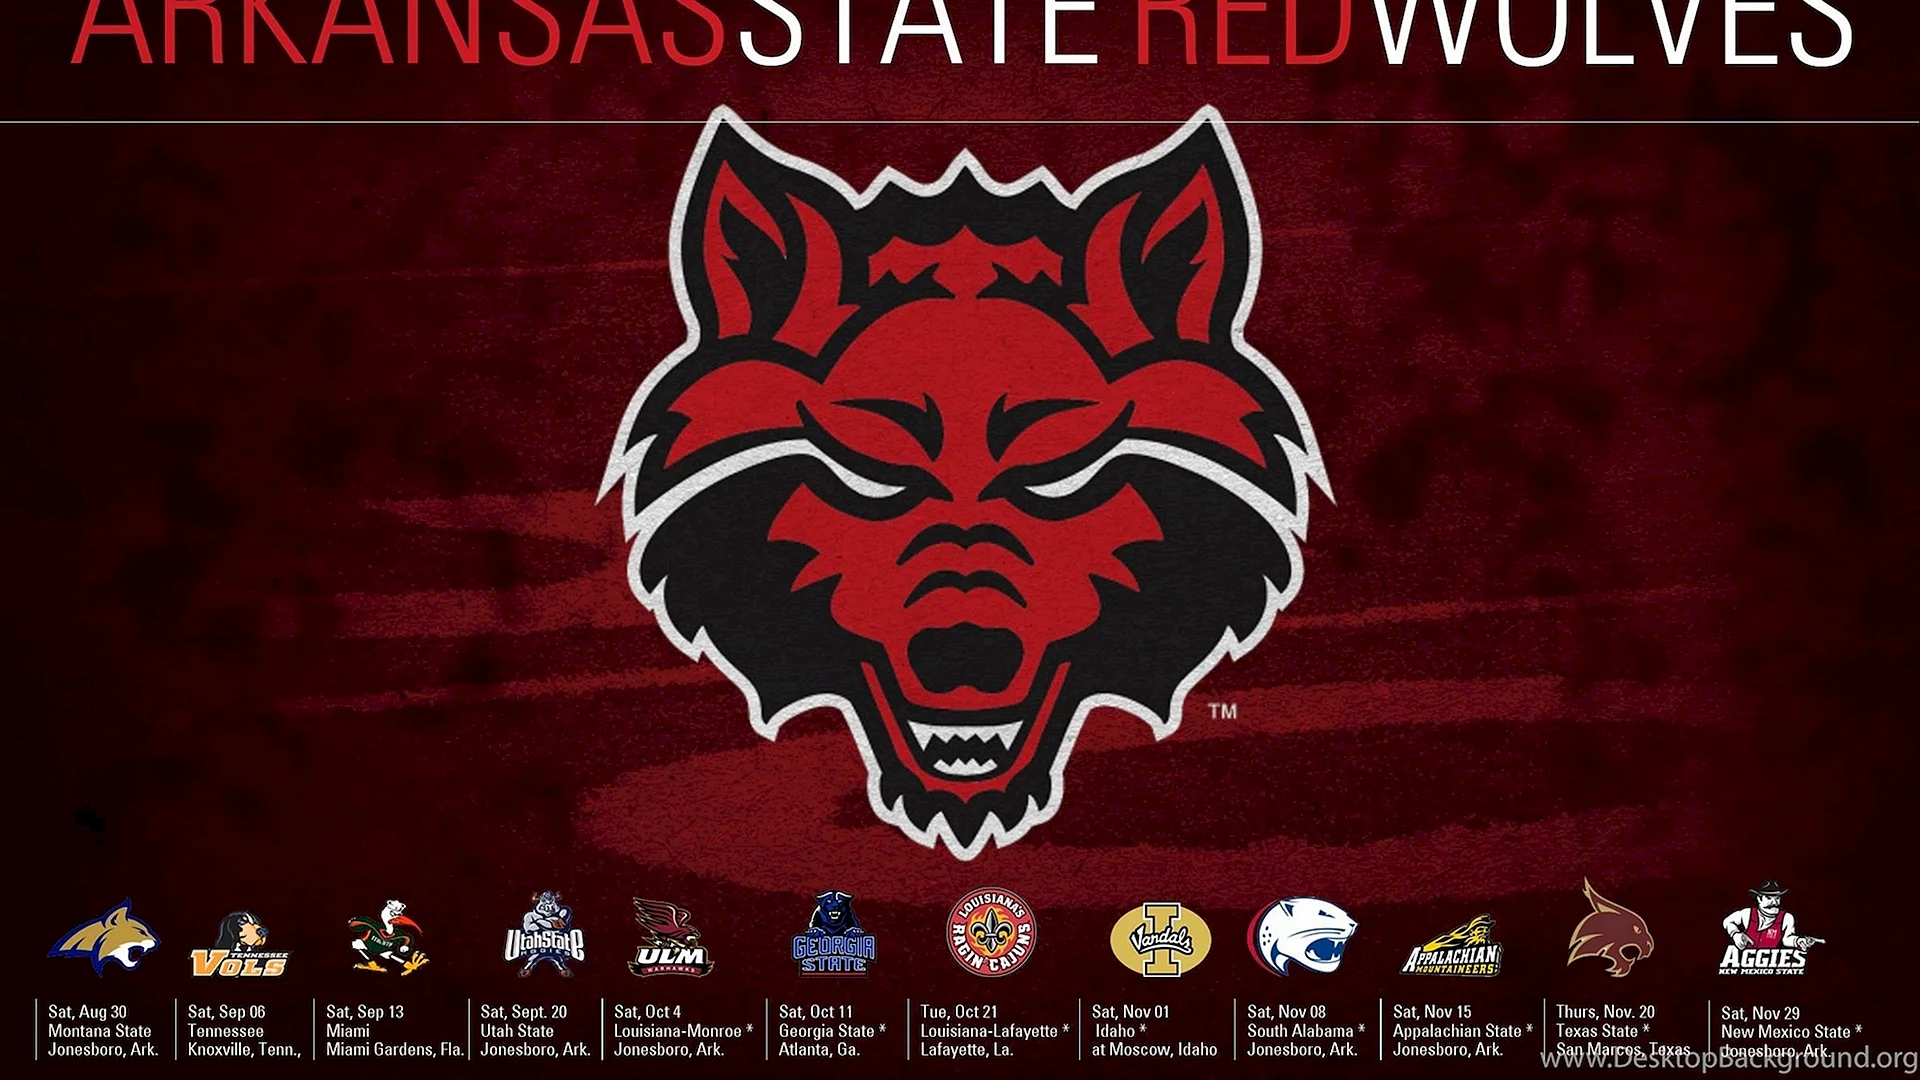 Arkansas State Red Wolves Wallpaper